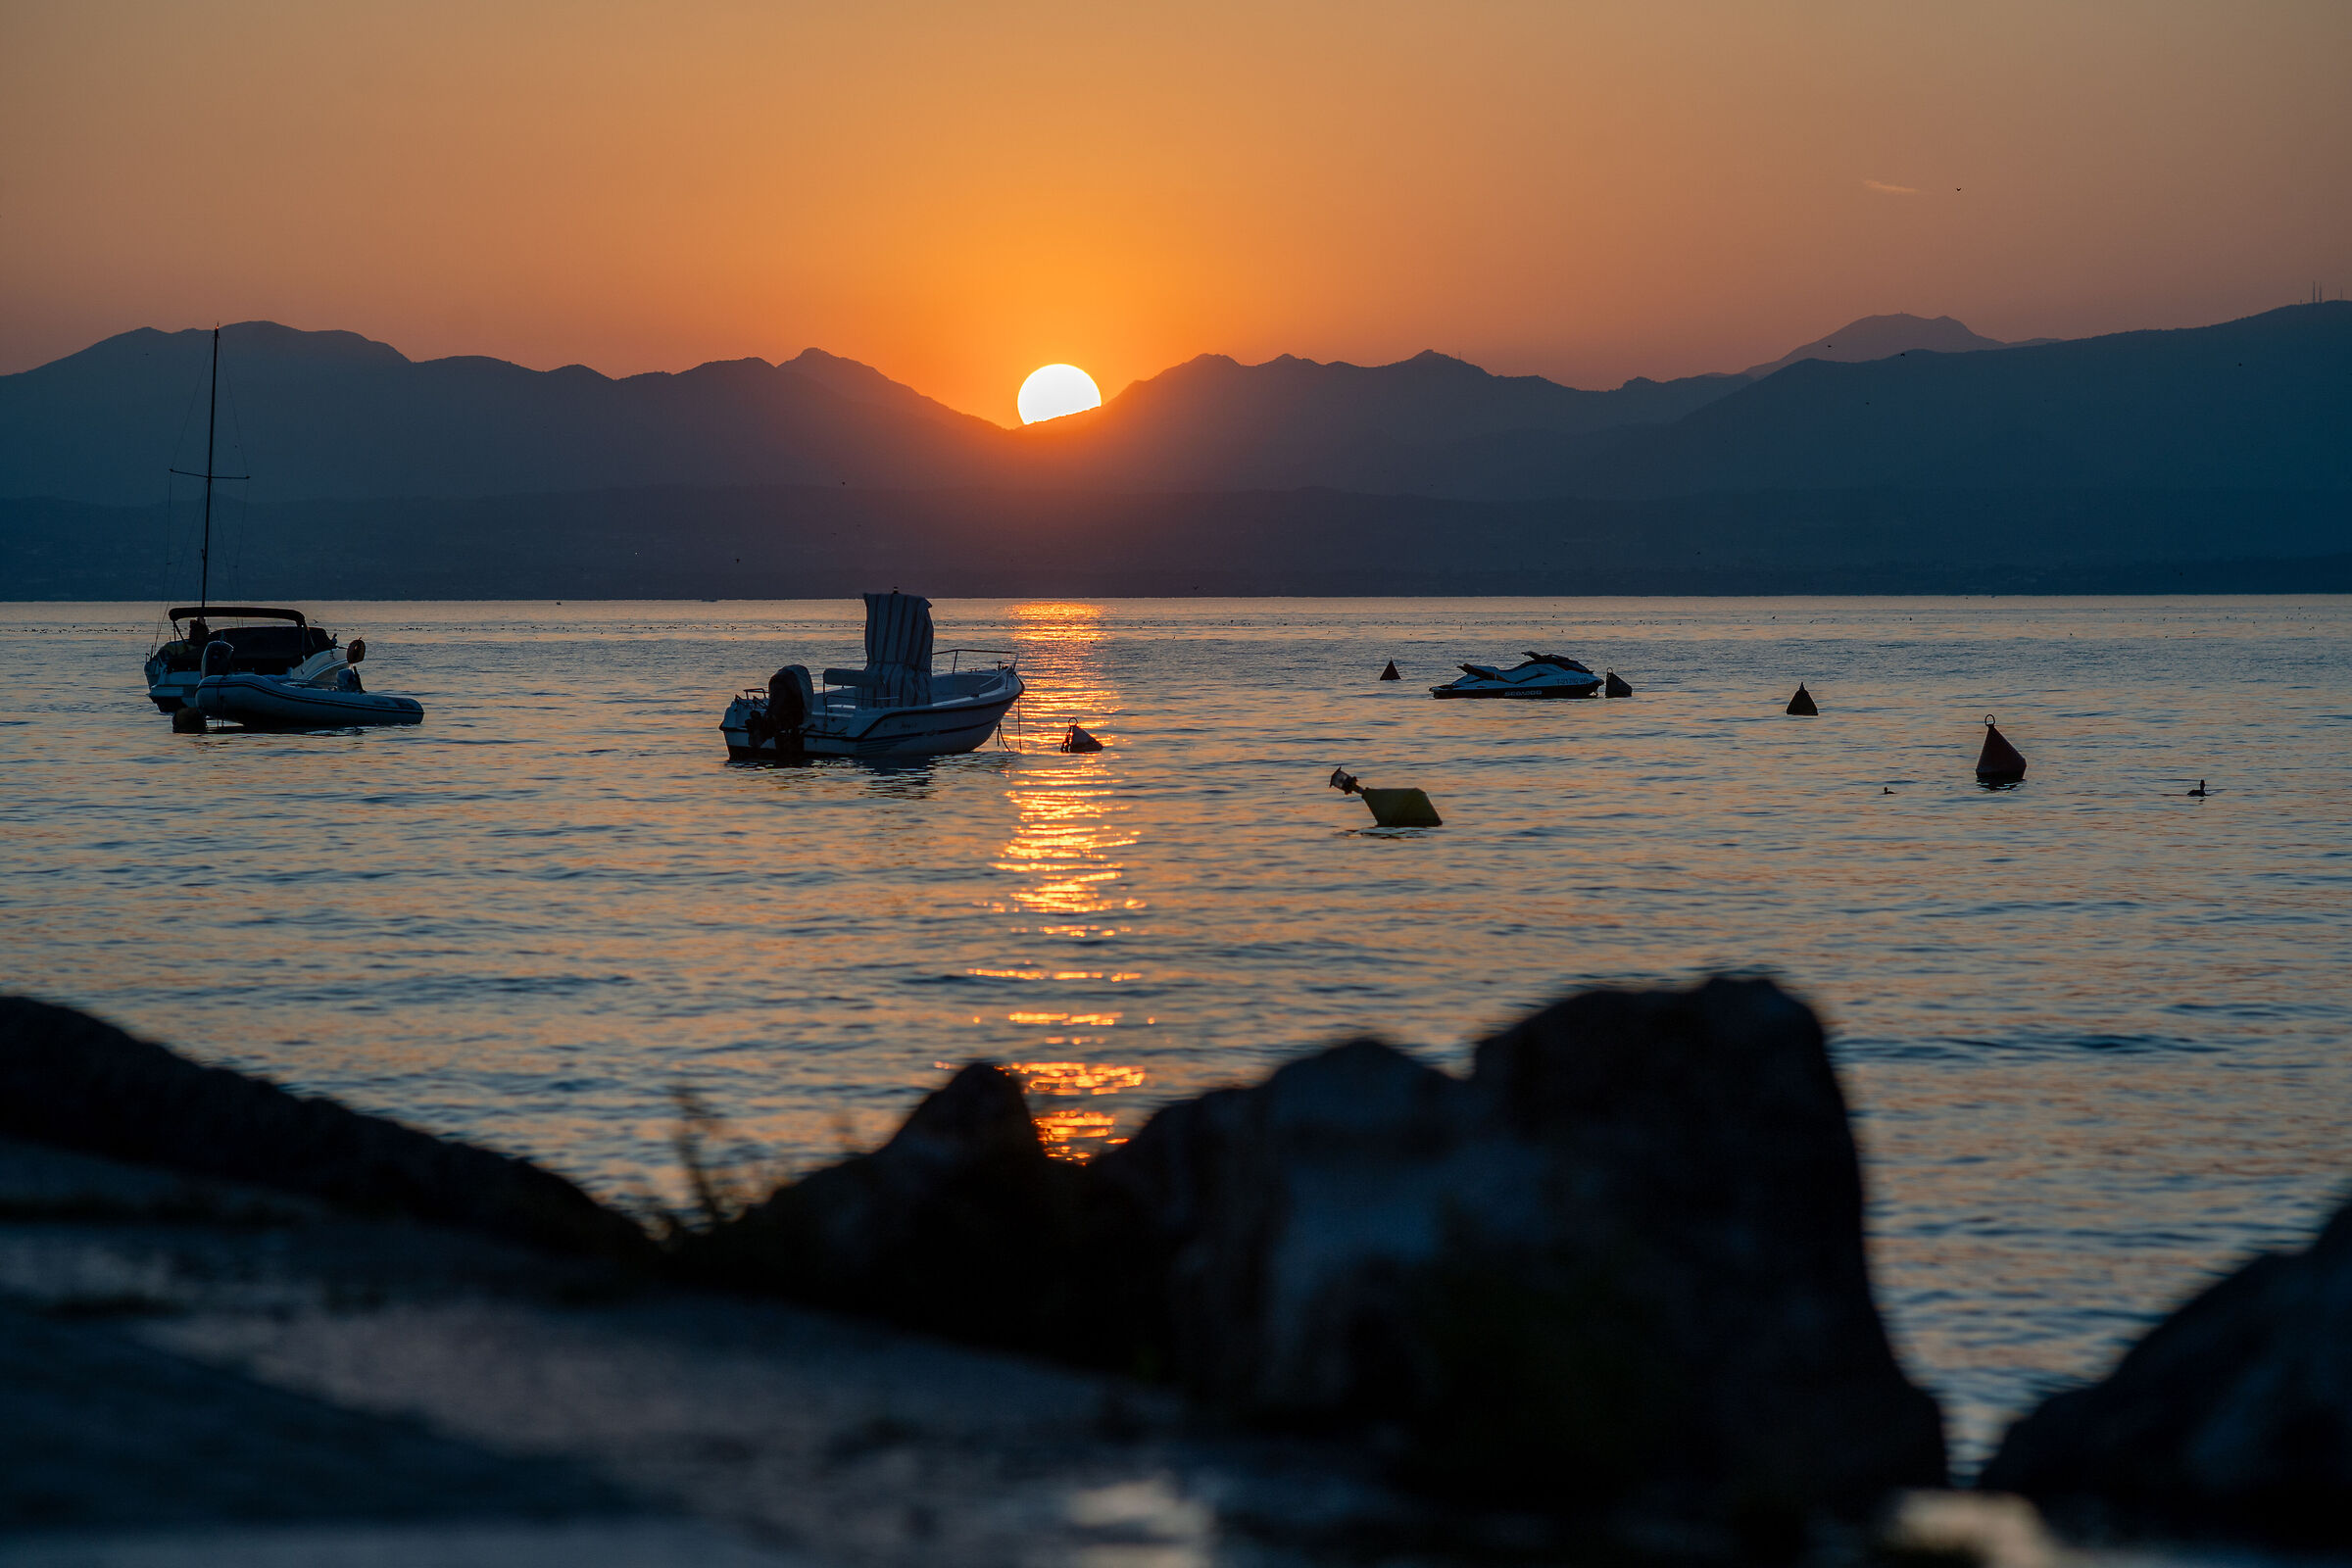 Sunset @ Garda Lake...